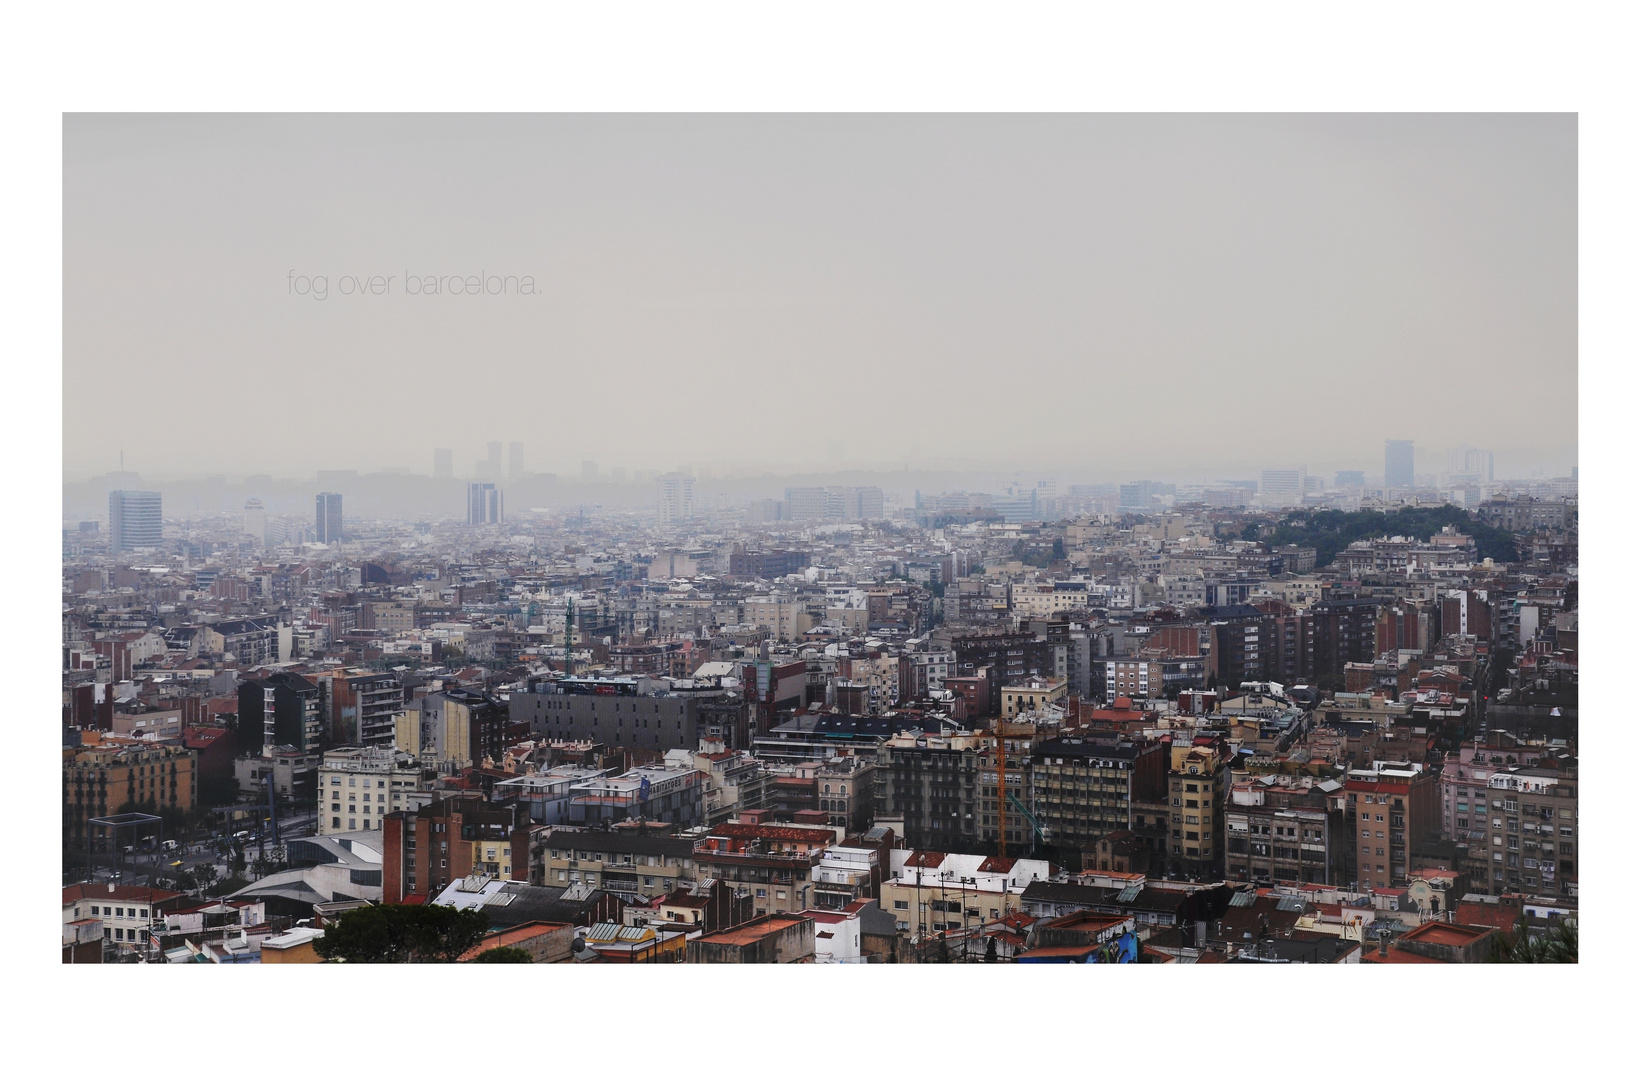 fog over barcelona2.